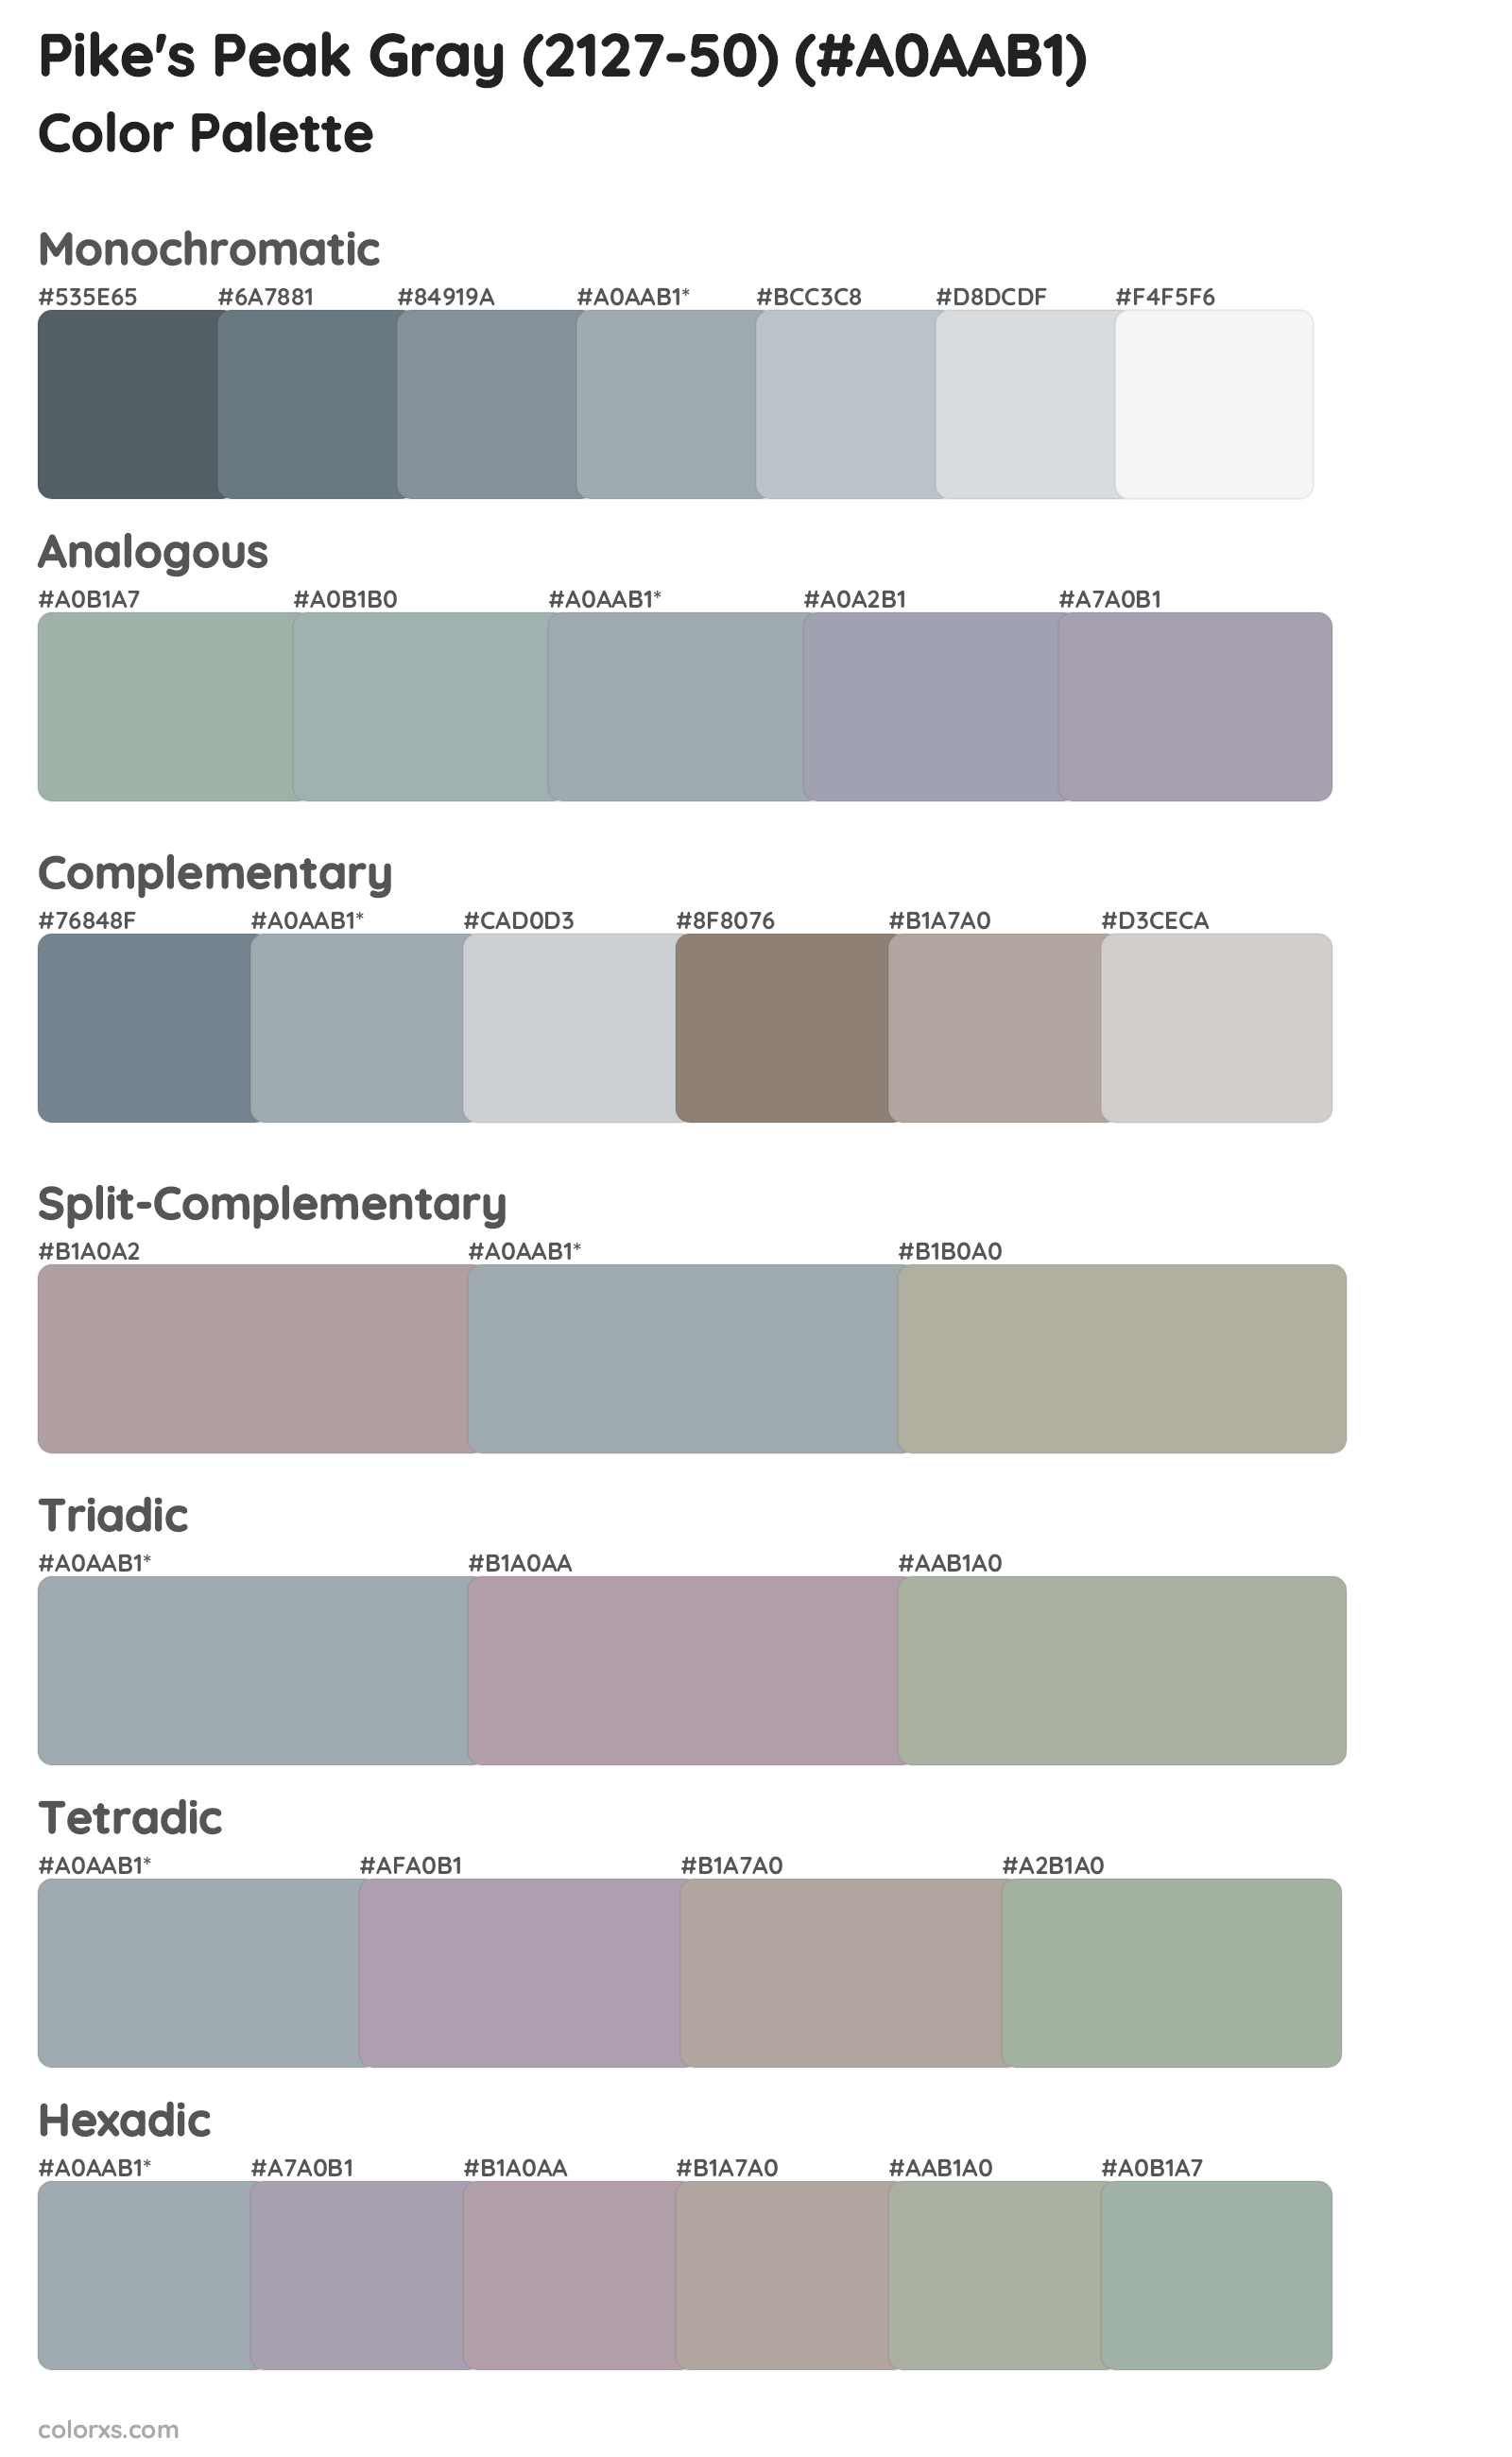 Pike's Peak Gray (2127-50) Color Scheme Palettes